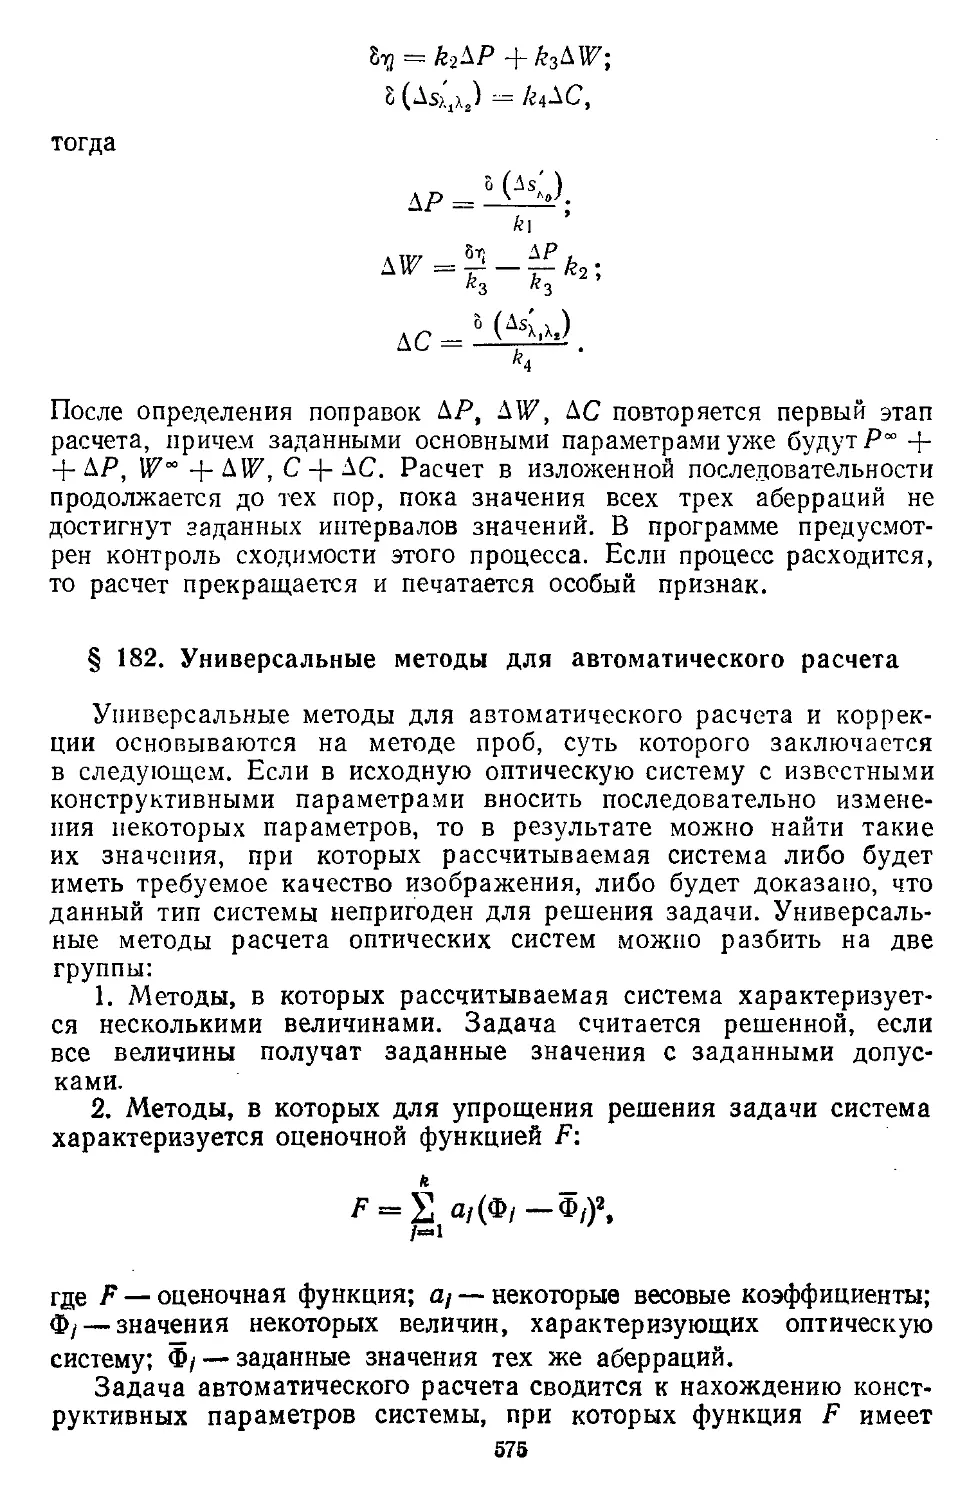 § 182. Универсальные методы для автоматического расчета